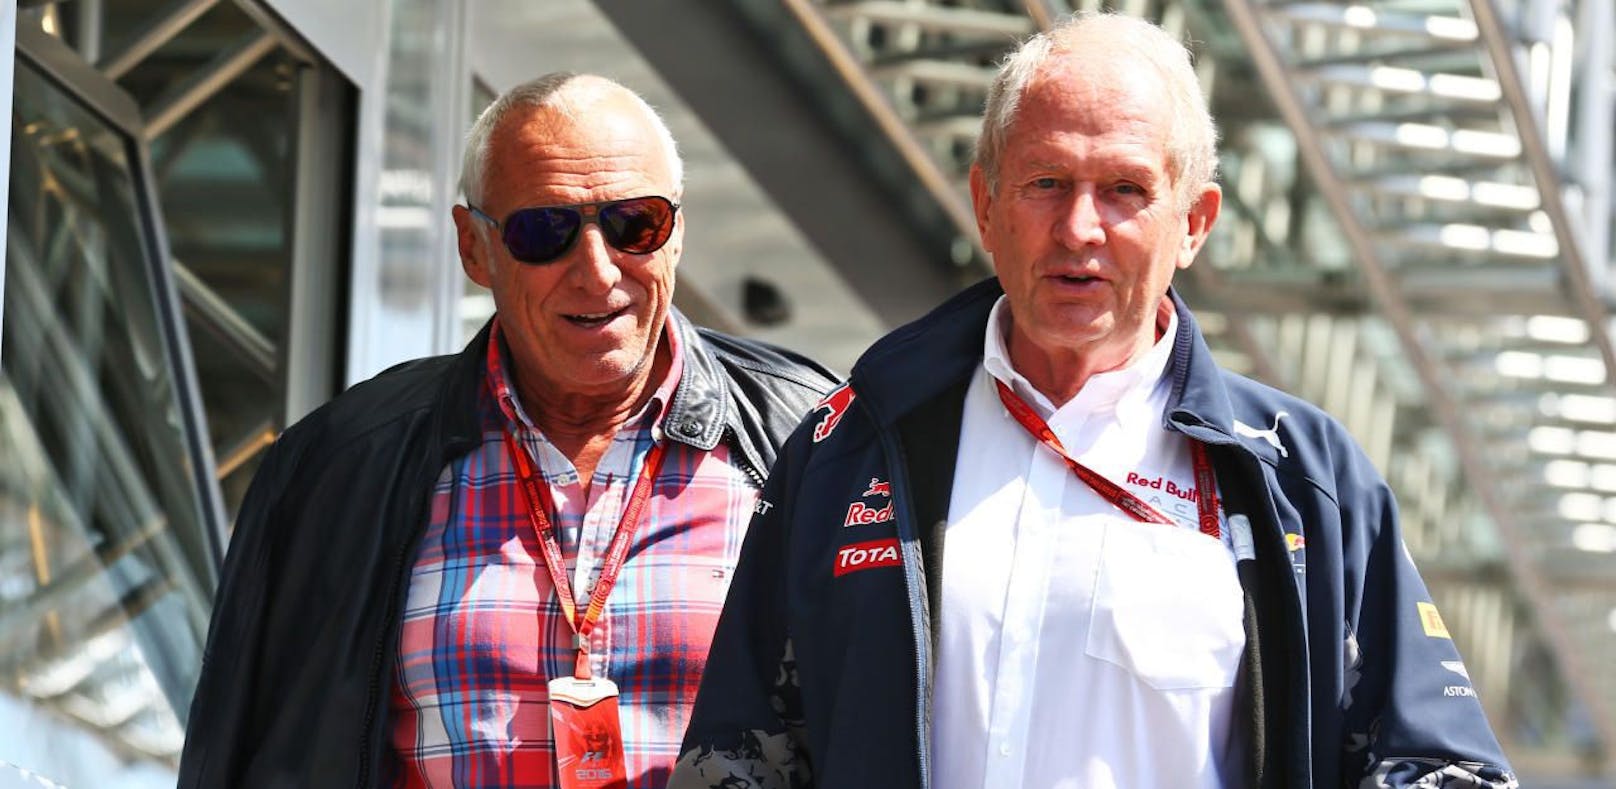 Red-Bull-Motorsportchef Helmut Marko im Gespräch mit dem Boss des Unternehmens, Dietrich Mateschitz (links).